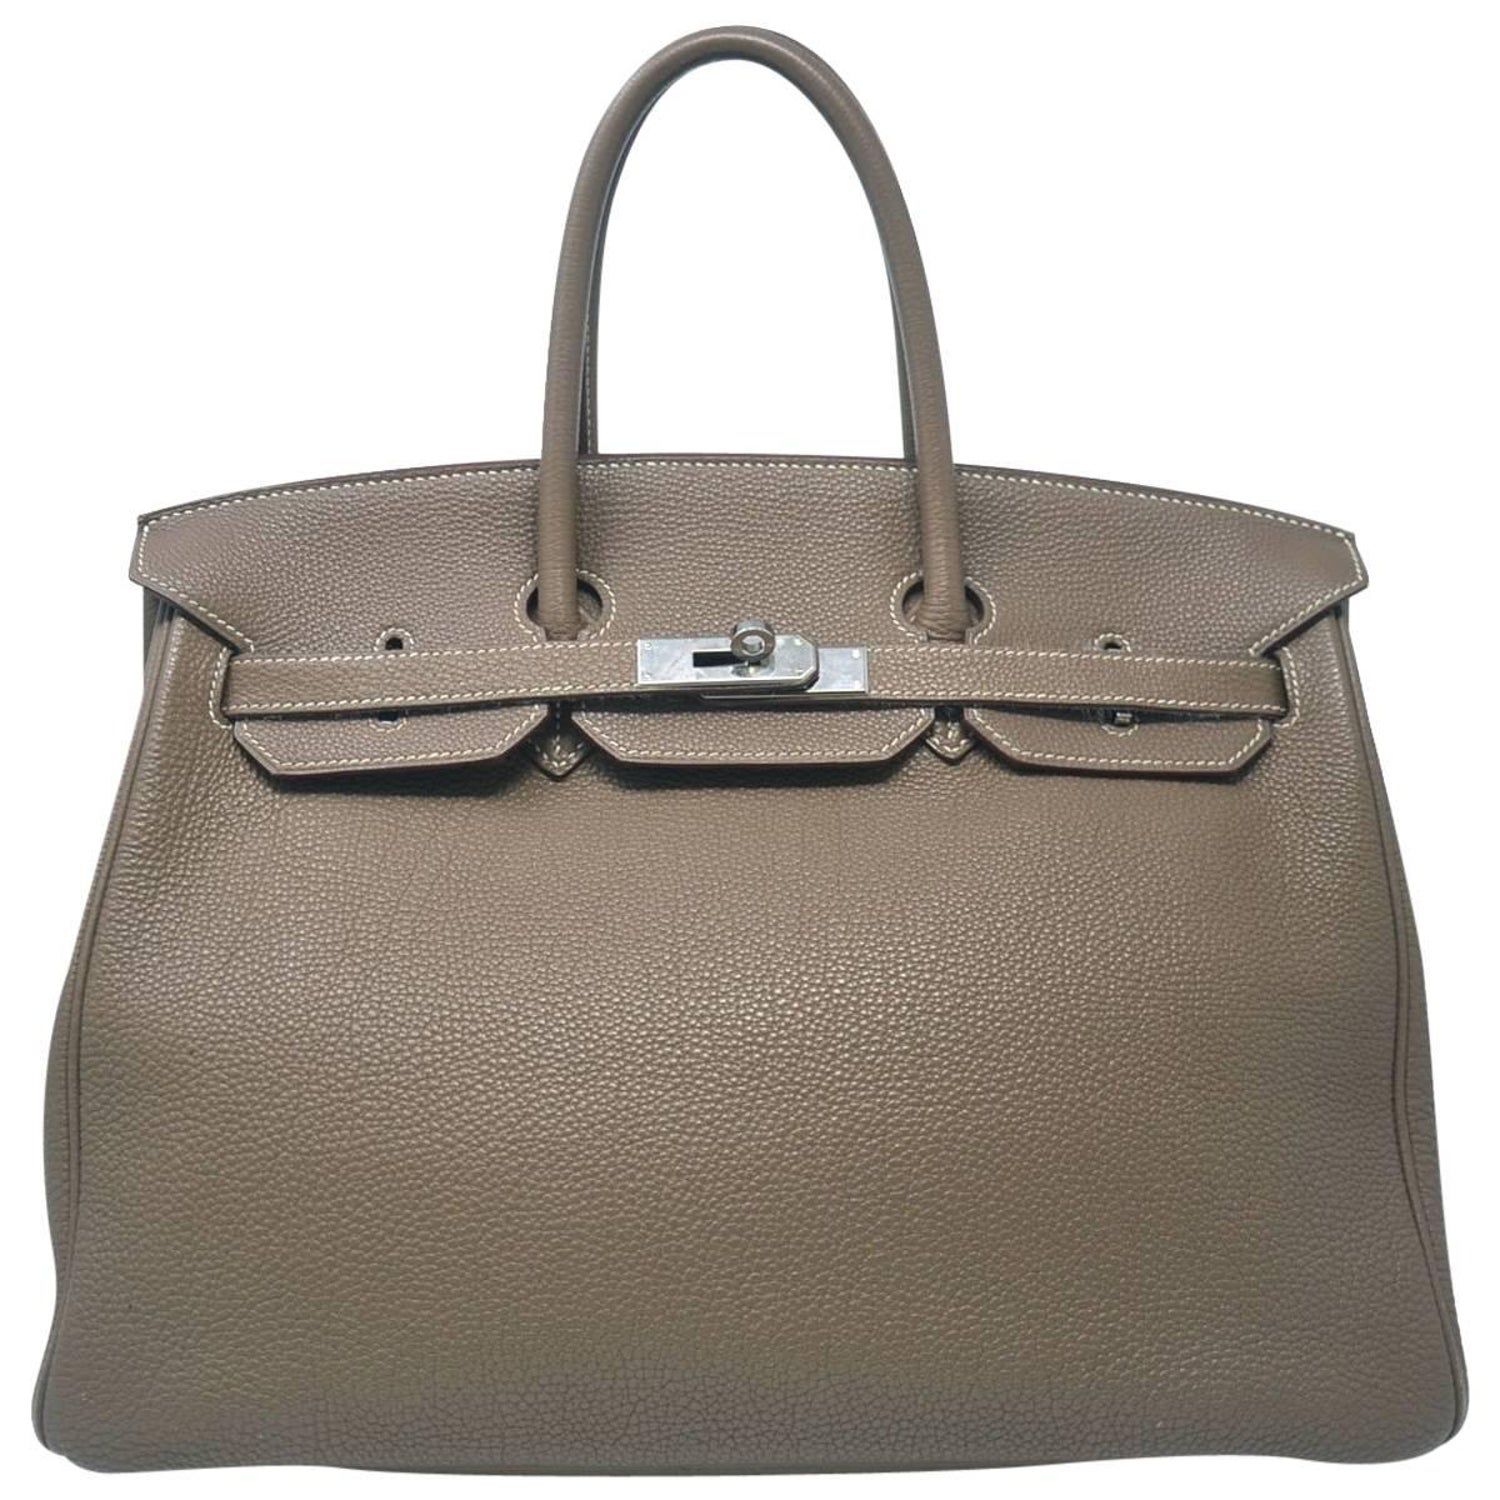 Hermes Birkin 25 Retourne Handmade Bag In Vert Amande Clemence Leather -  Satchels, Facebook Marketplace